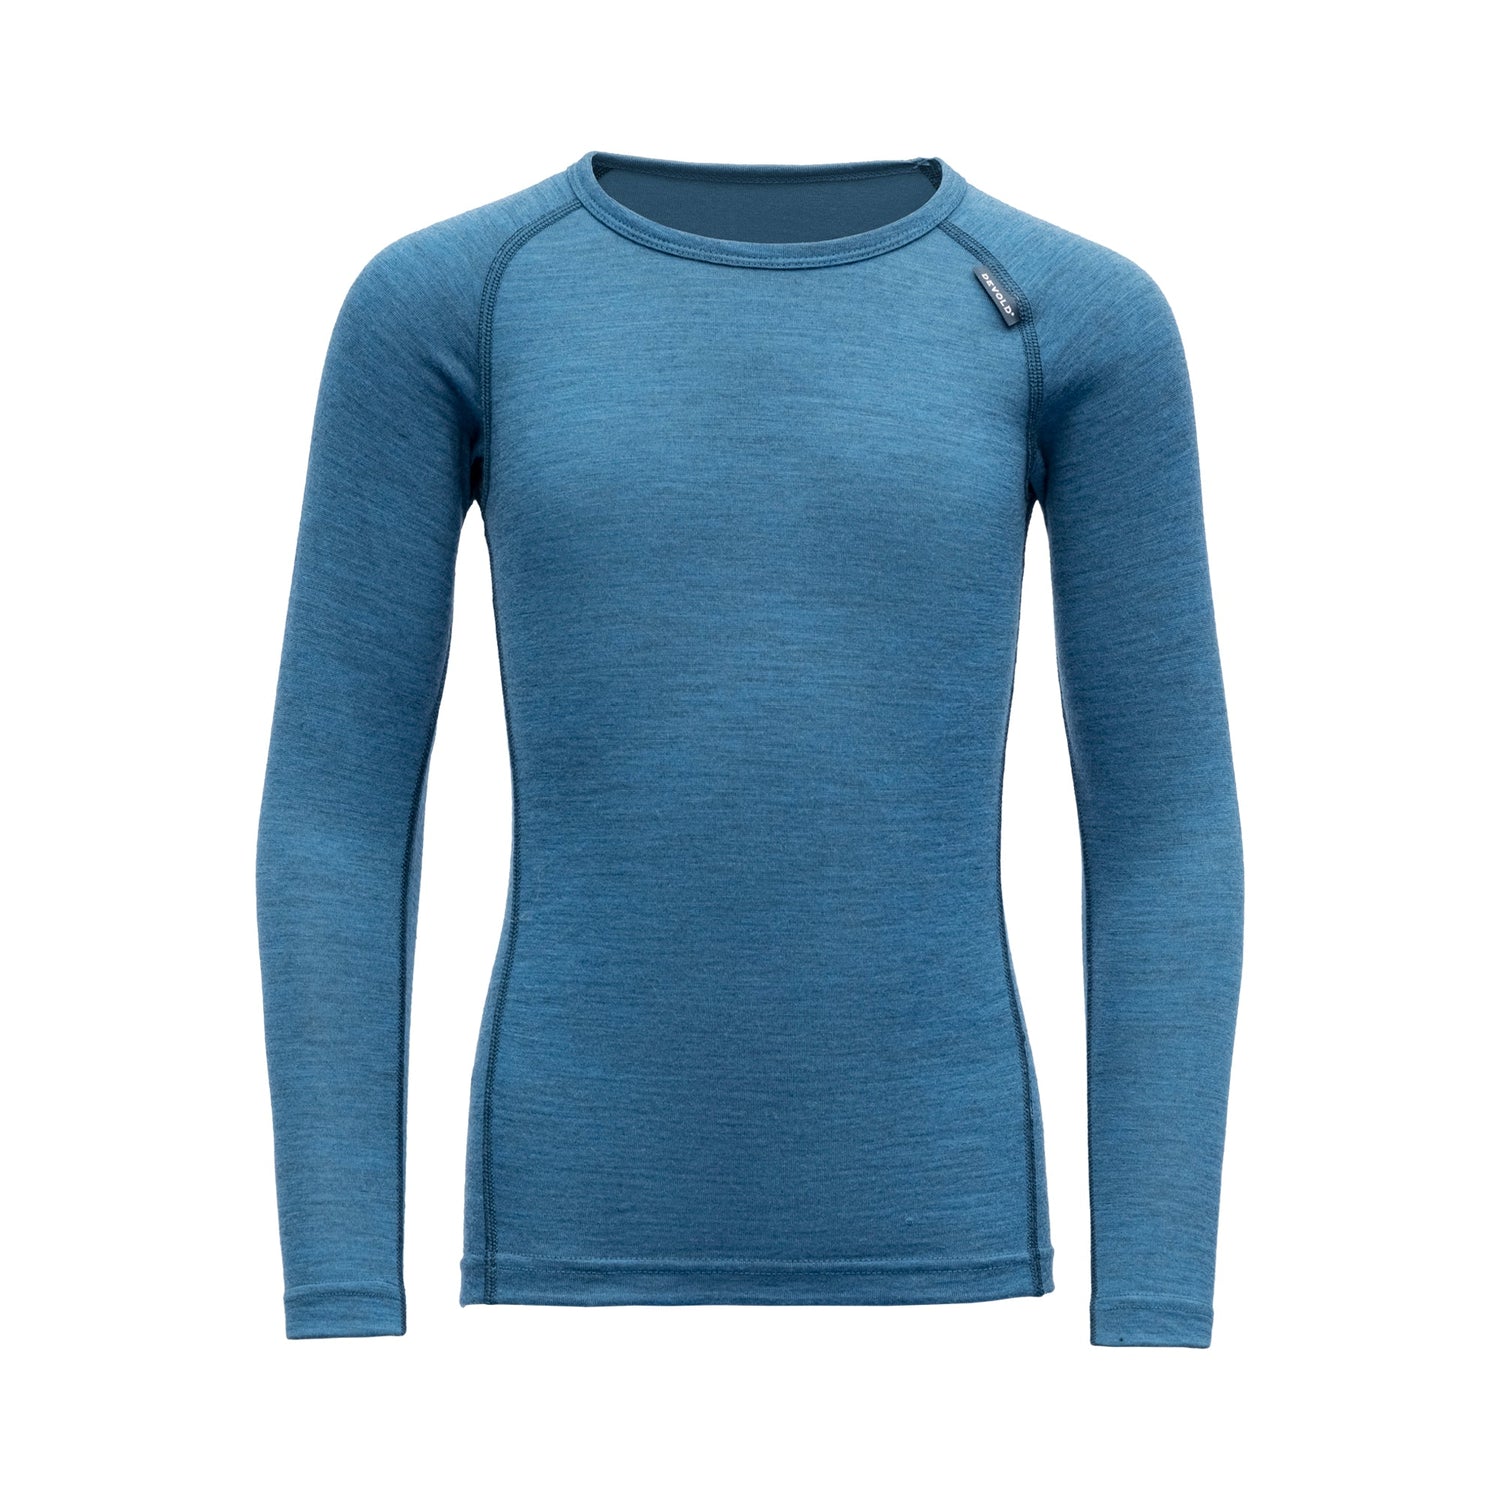 Devold - Kids Breeze L/S Shirt - 100% Merino Wool - Weekendbee - sustainable sportswear